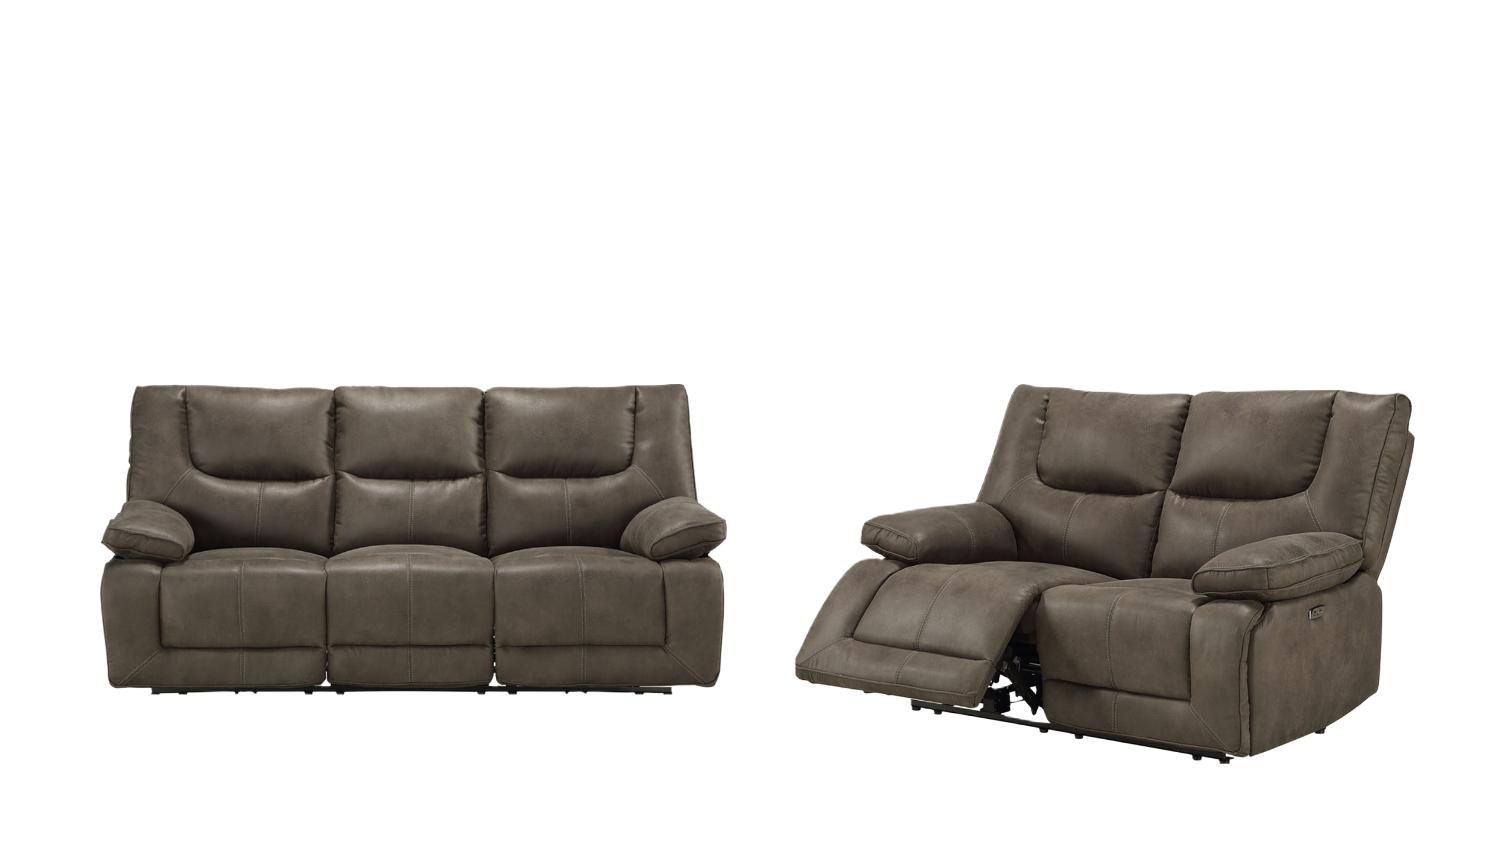 

    
Contemporary Dark Gray Leather Power Sofa + Loveseat by Acme Harumi 54895-2pcs
